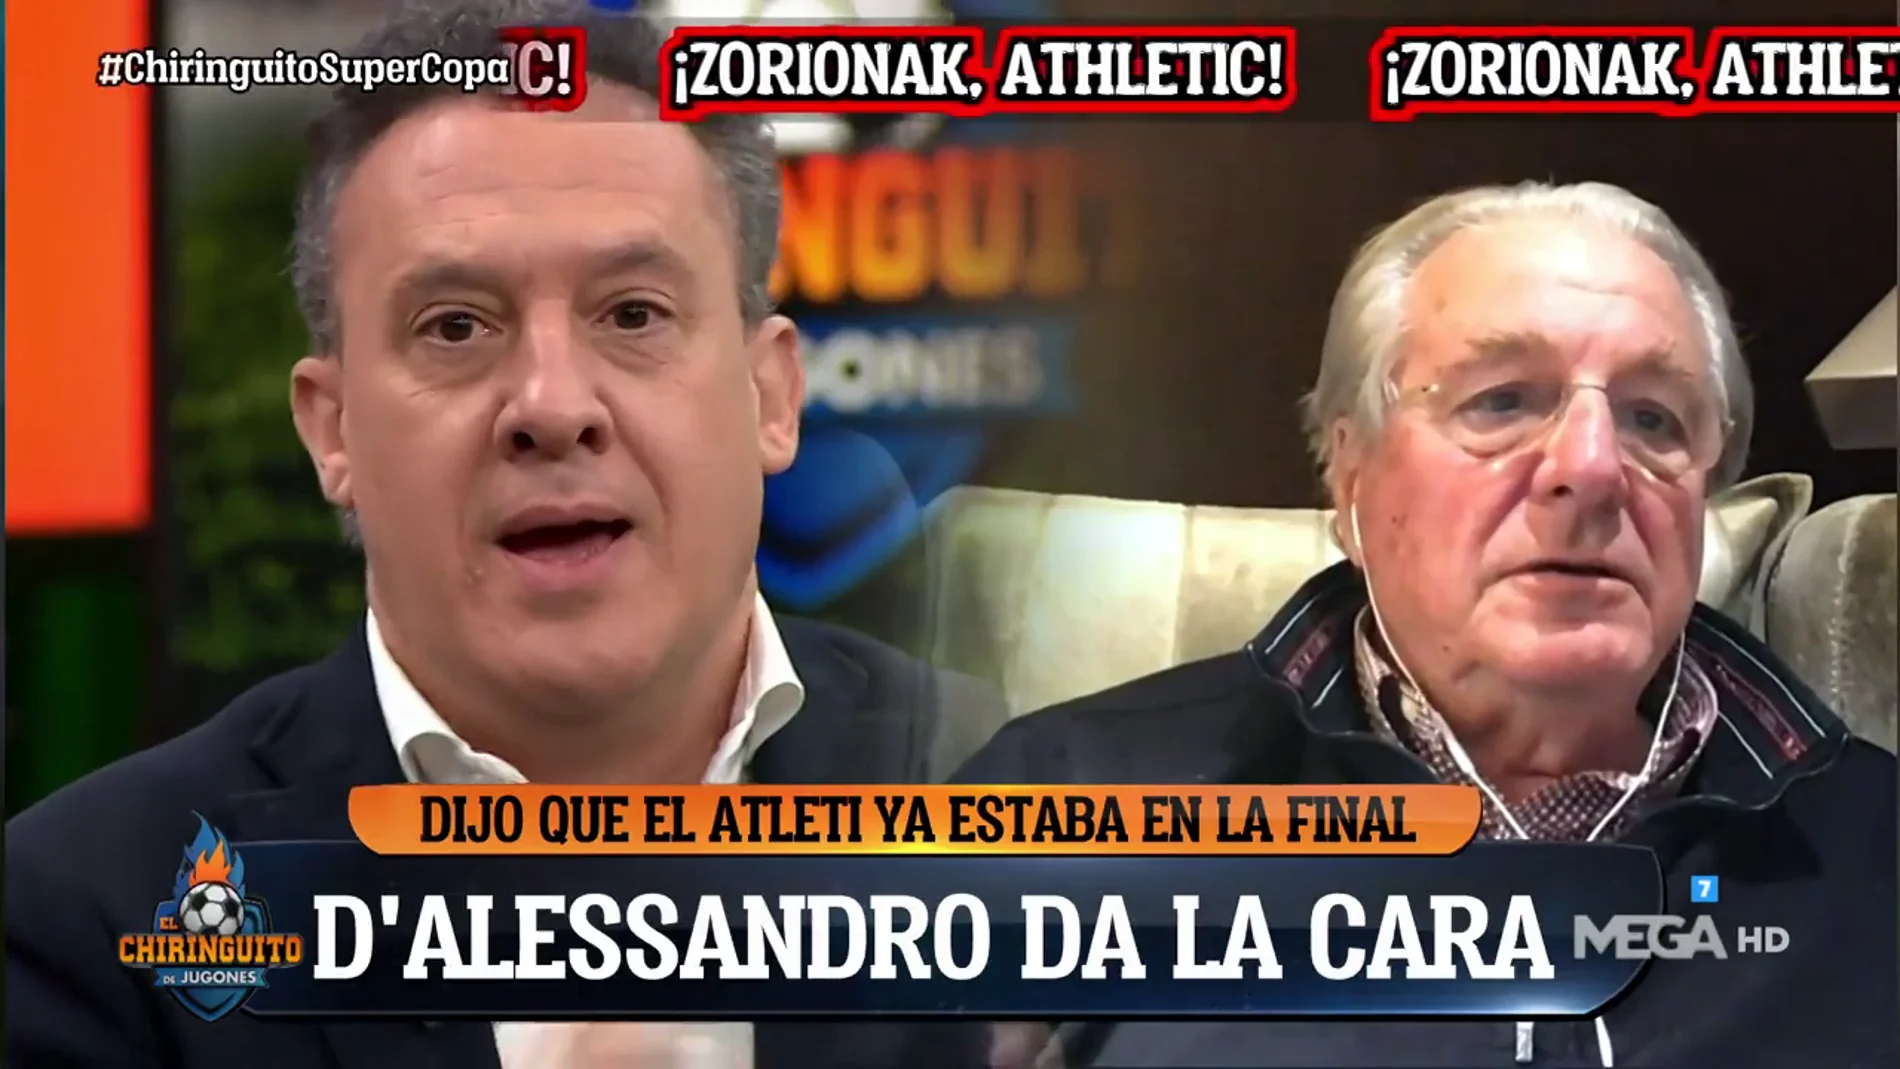 Edu Velasco: "D'Alessandro se lleva un zasca brutal porque el Athletic está en la final"